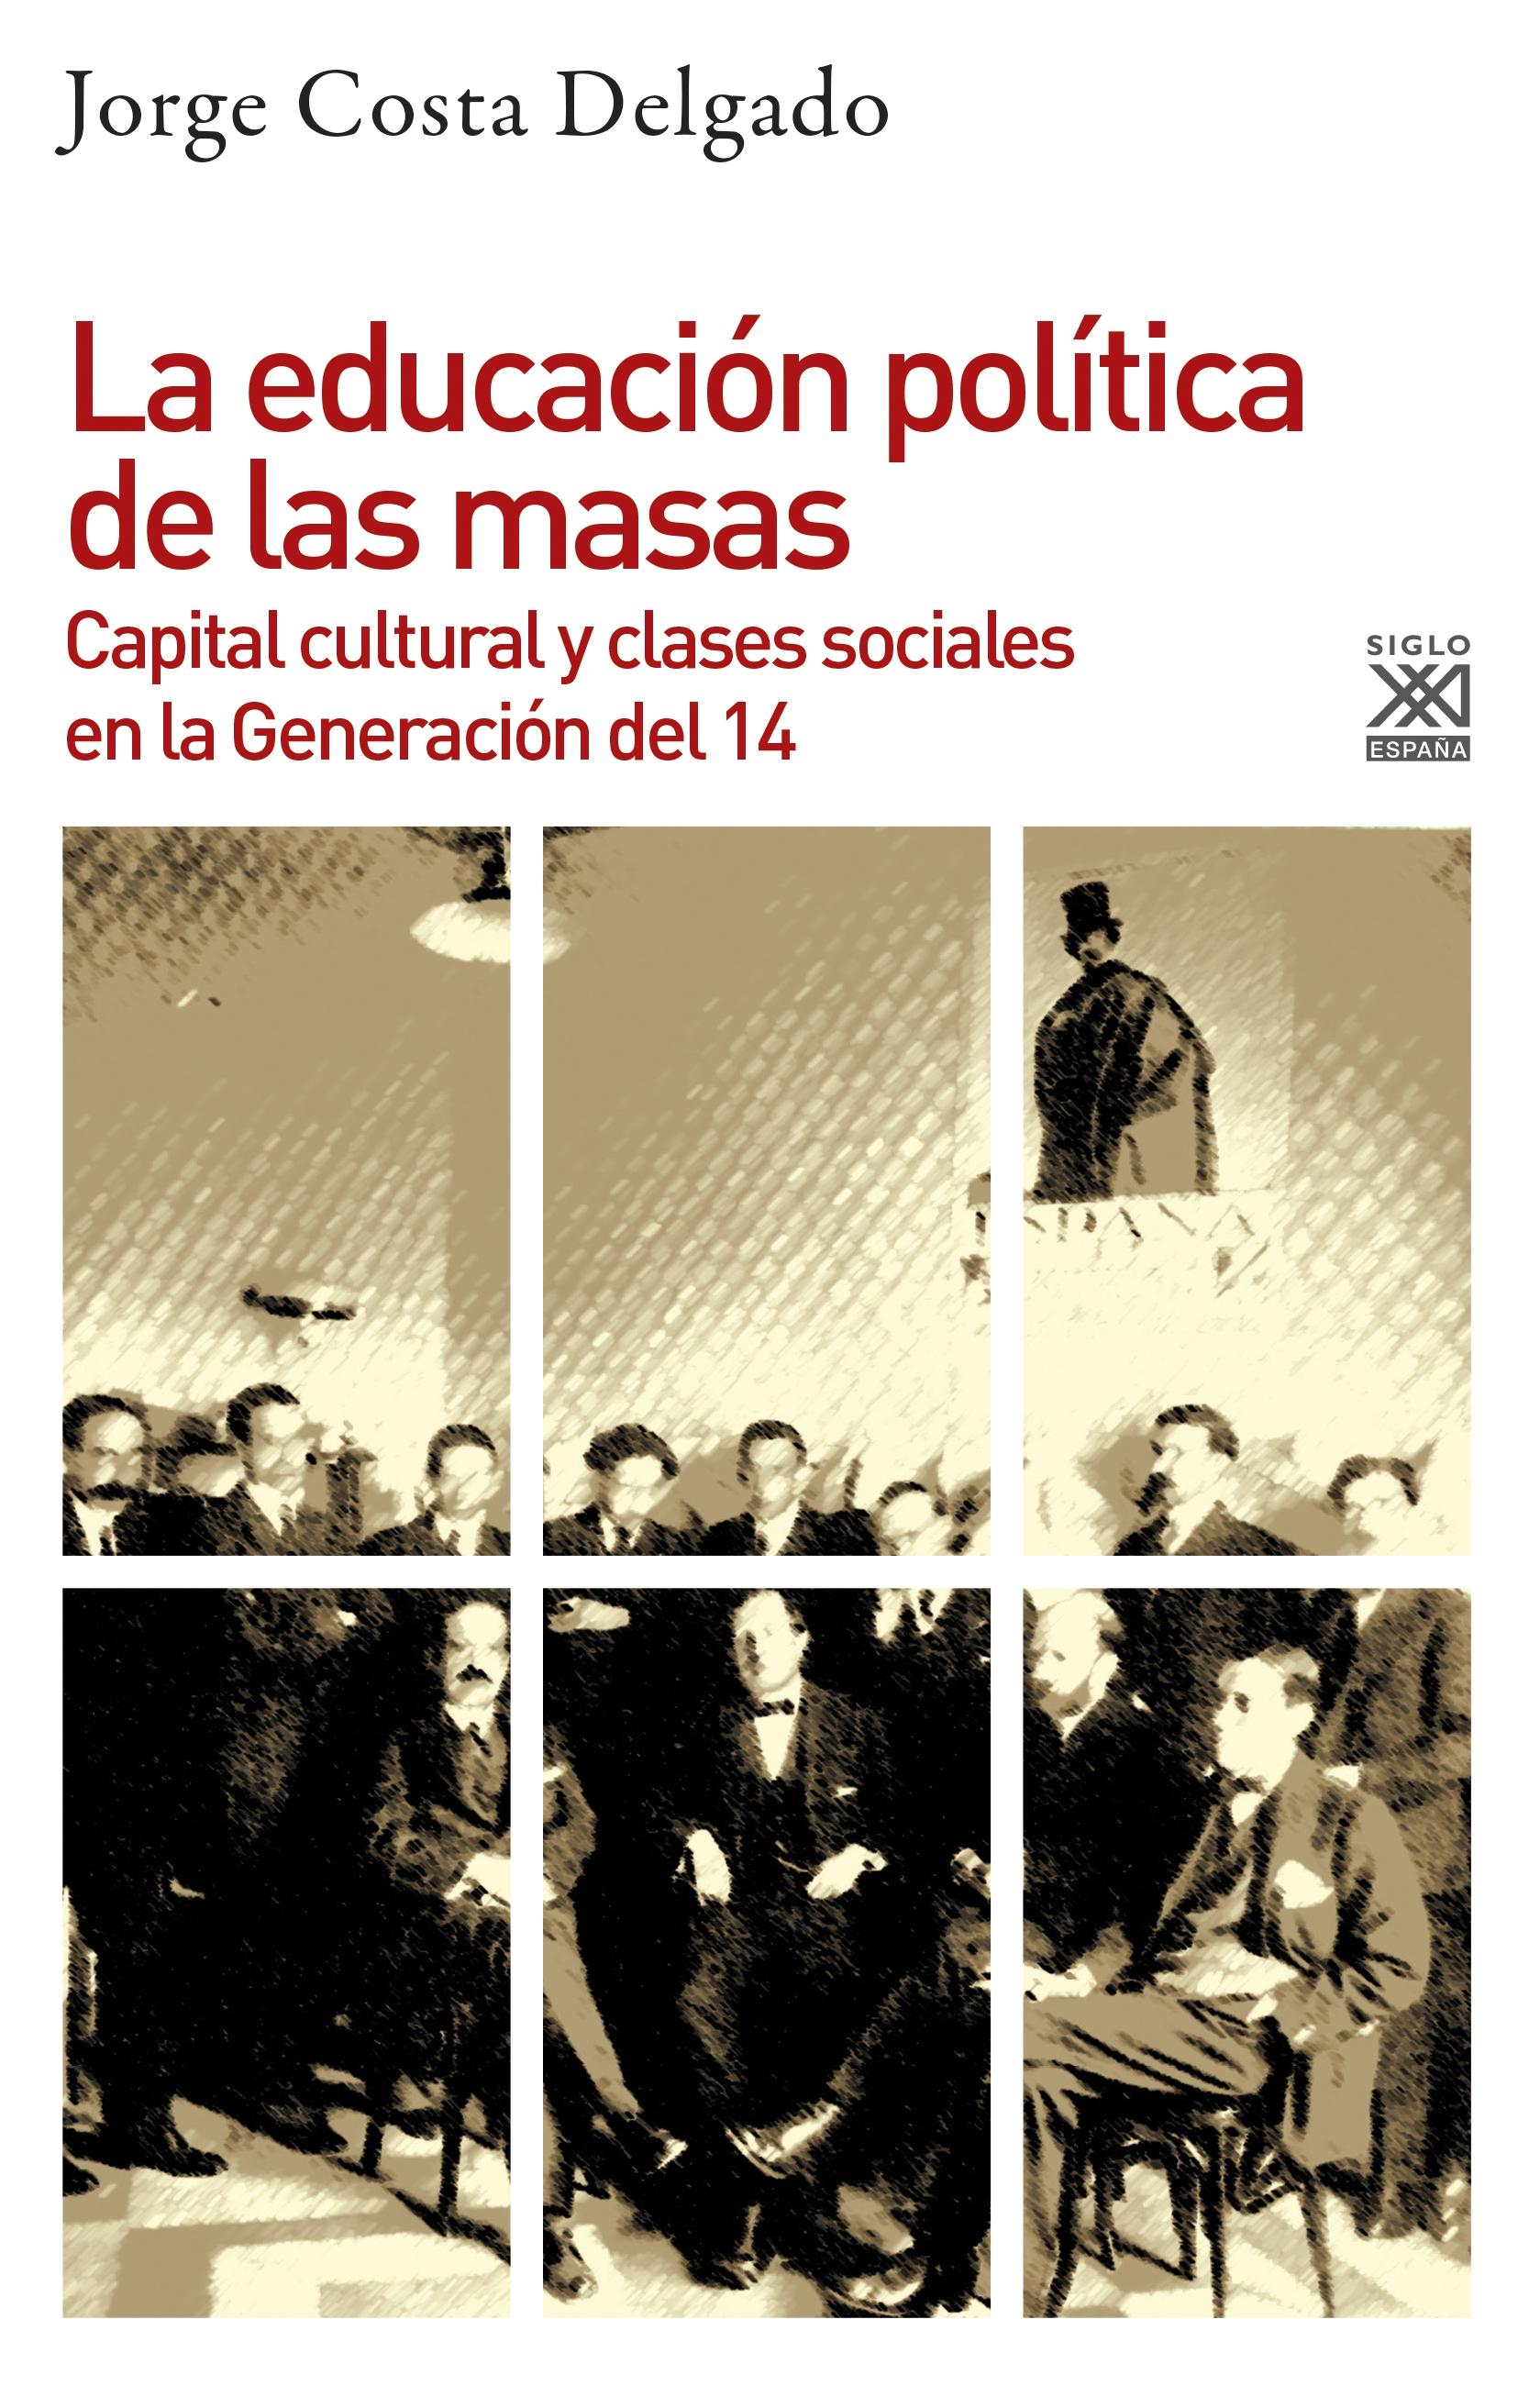 La educación política de las masas "Capital cultural y clases sociales en la Generación del 14"